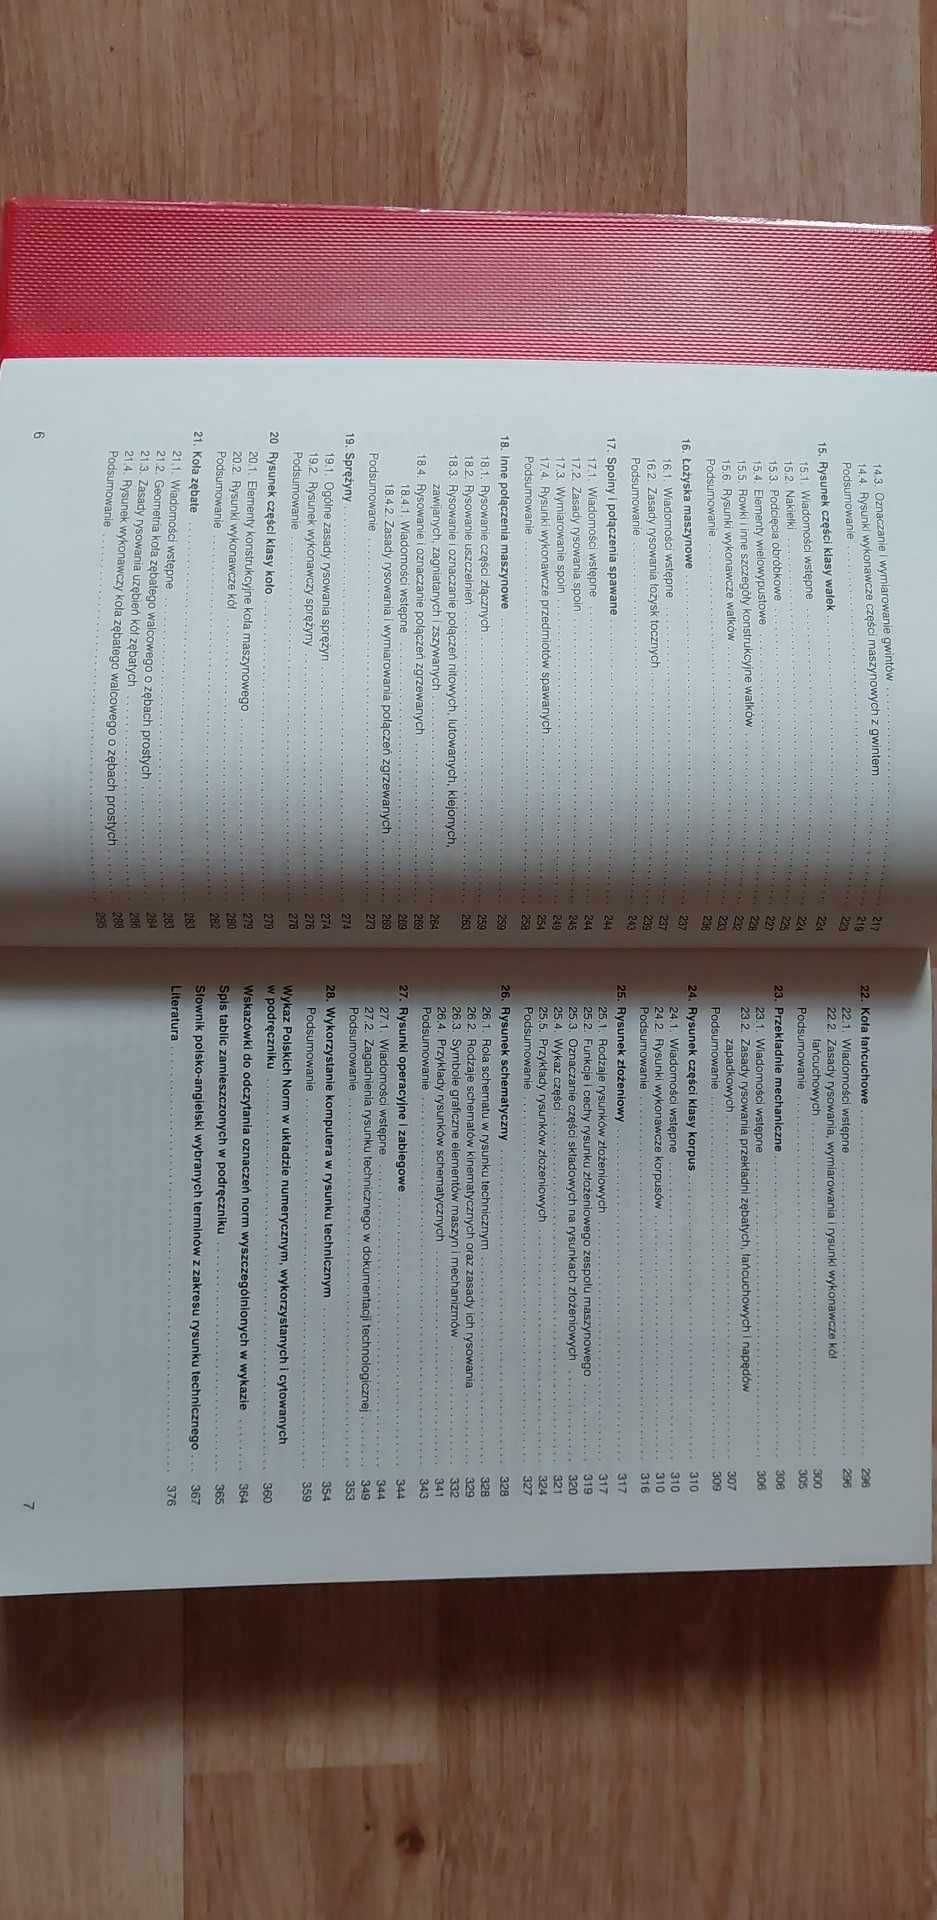 Podręcznik szkolny Rysunek techn. dla mechaników - klasa 1 technikum